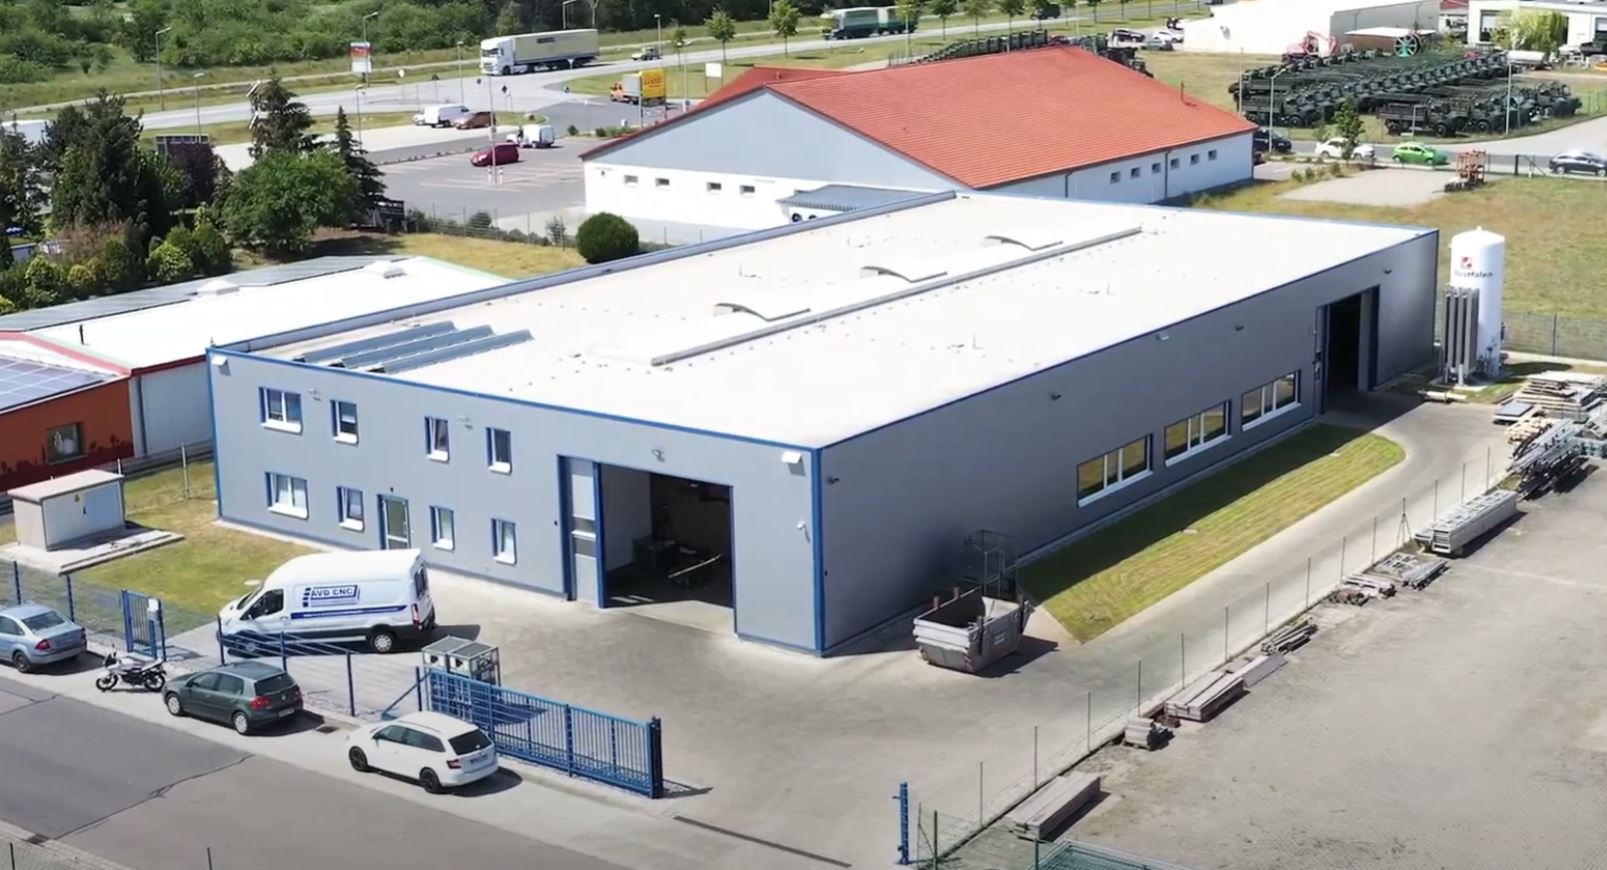 AVD CNC Blechverarbeitung GmbH